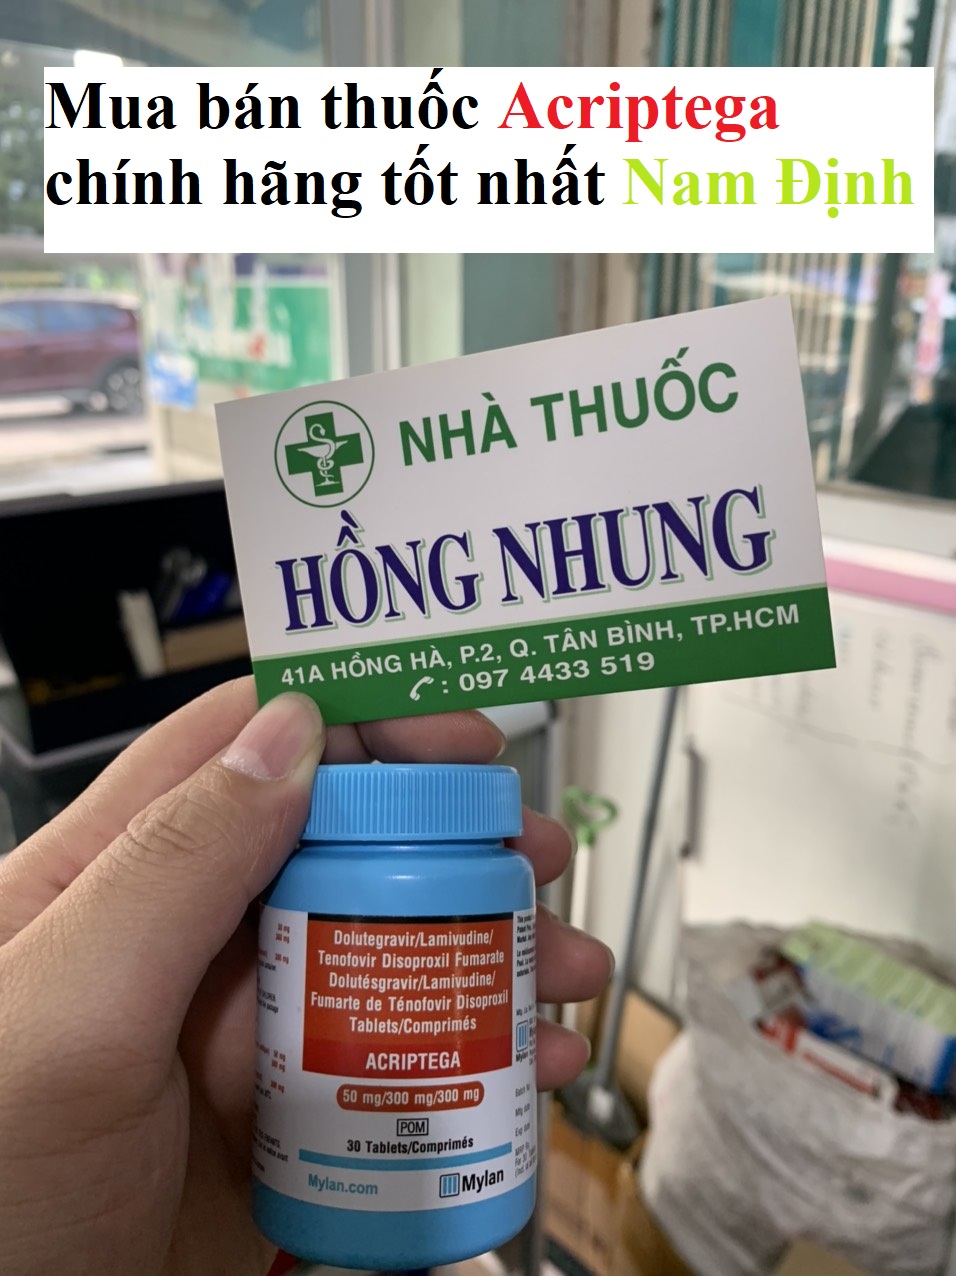 Mua bán thuốc Acriptega tốt nhất Nam Định